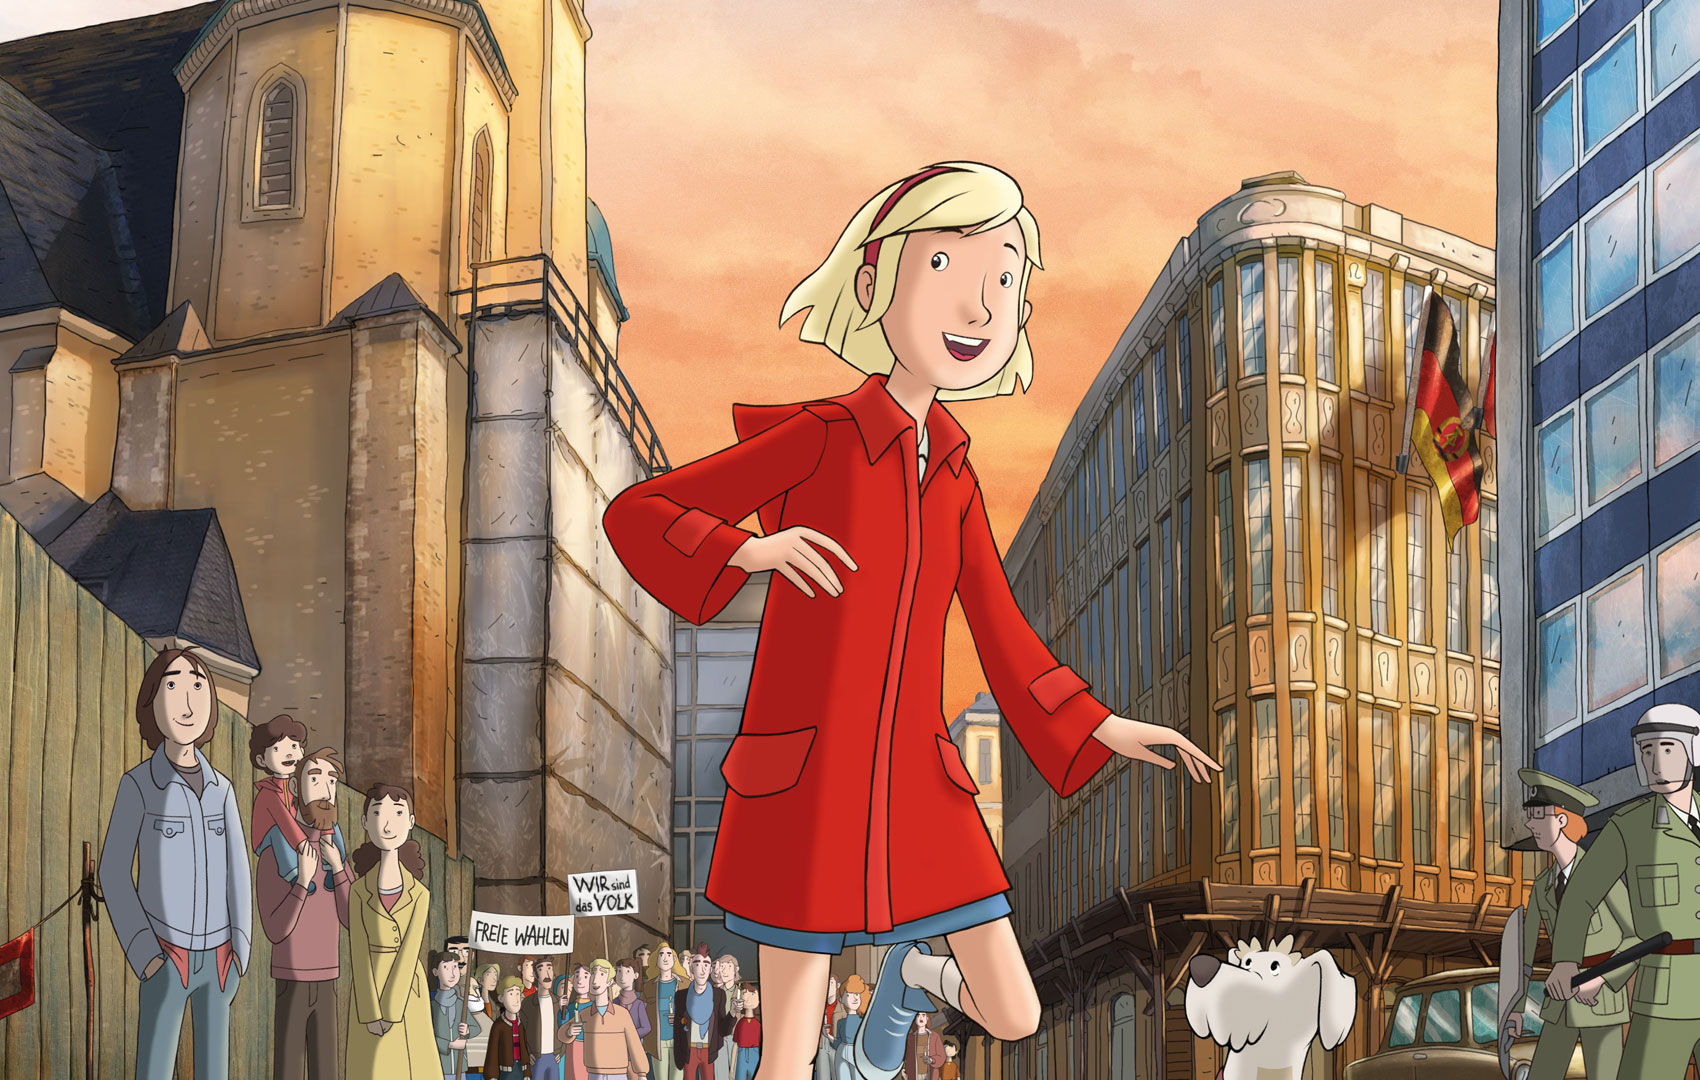 Zeichentrickanimation: Ein Mädchen ist in der Leipziger Altstadt zu sehen, im Hintergrund wird eine Demonstration gezeigt.